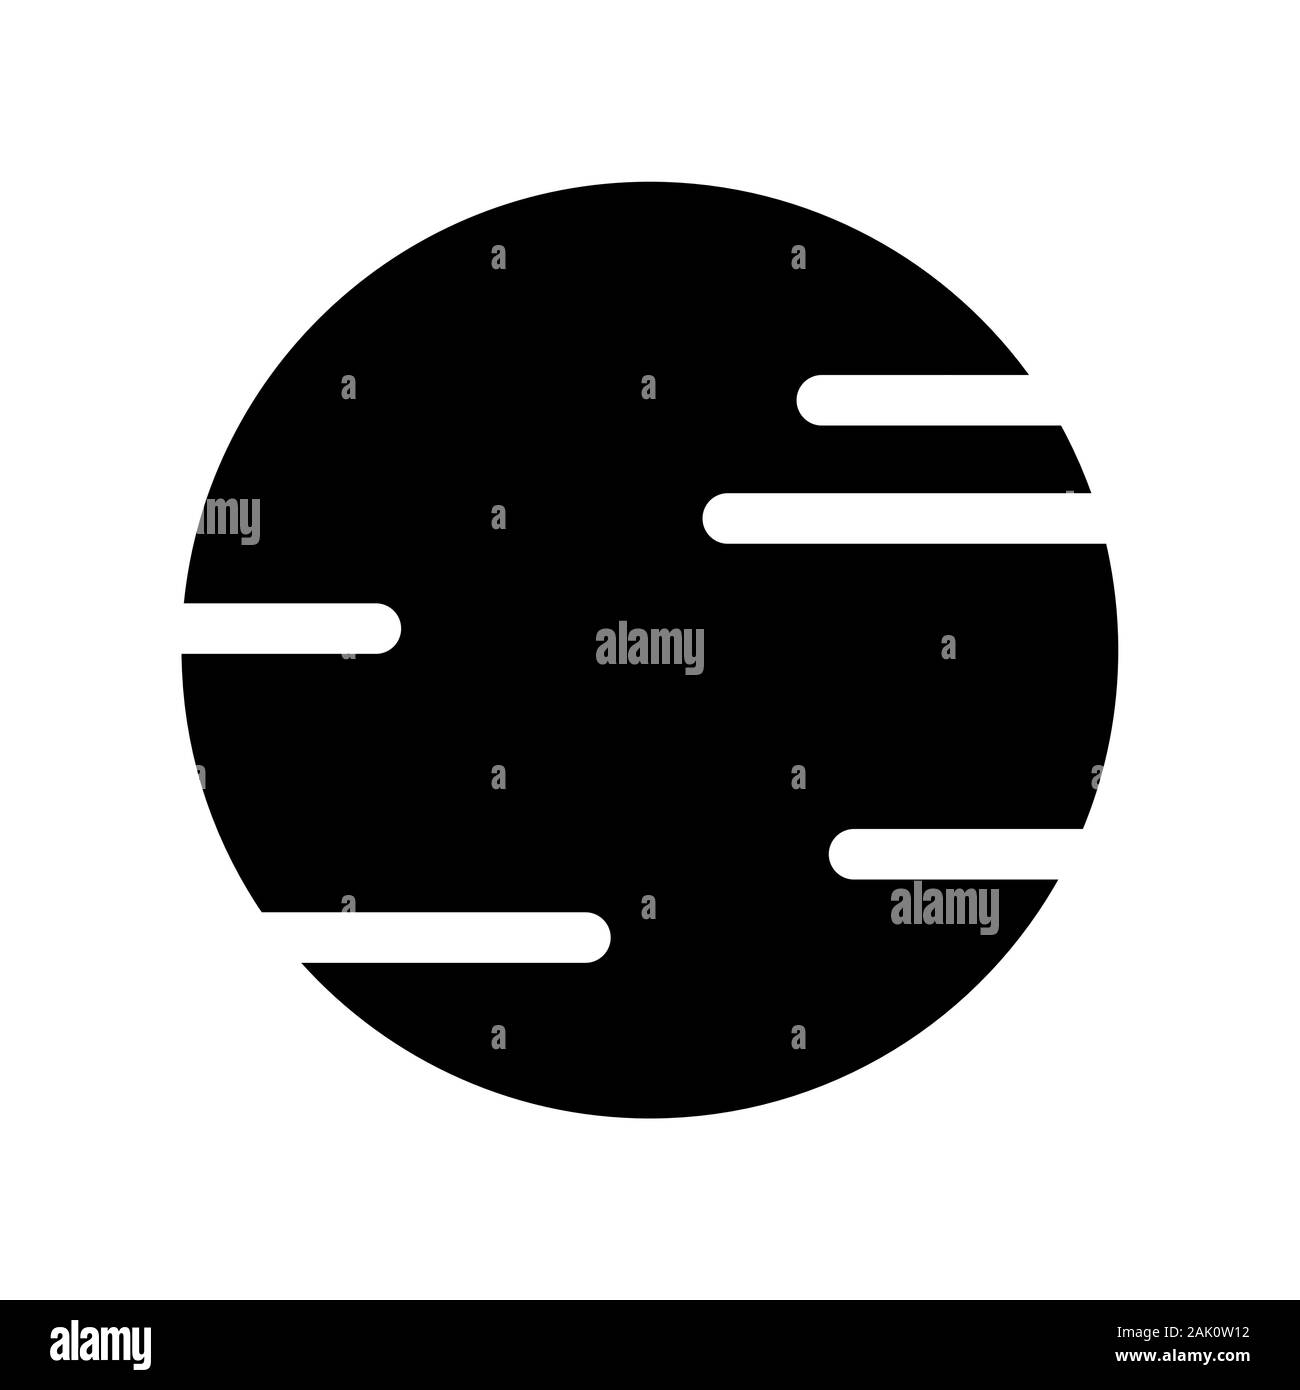 Space Planet Symbol Silhouette Vektor auf weißem Hintergrund. Black Planet symbol Abbildung. Design für die Verwendung auf Web- und Mobile Anwendungen Stock Vektor